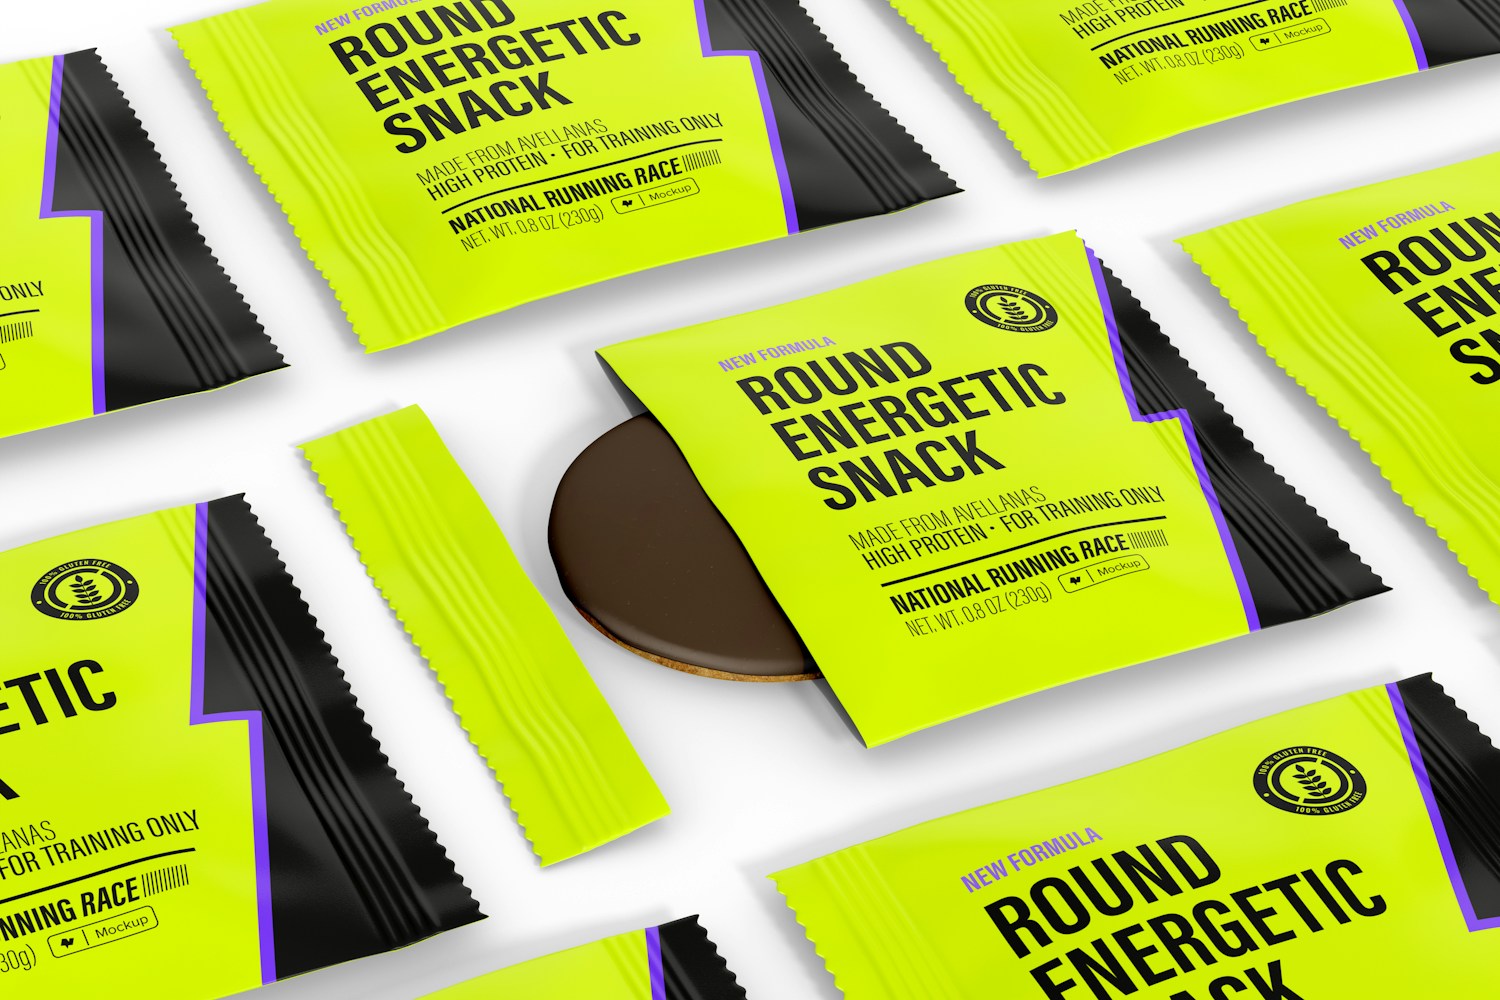 Round Energetic Snack Set Packaging Mockup